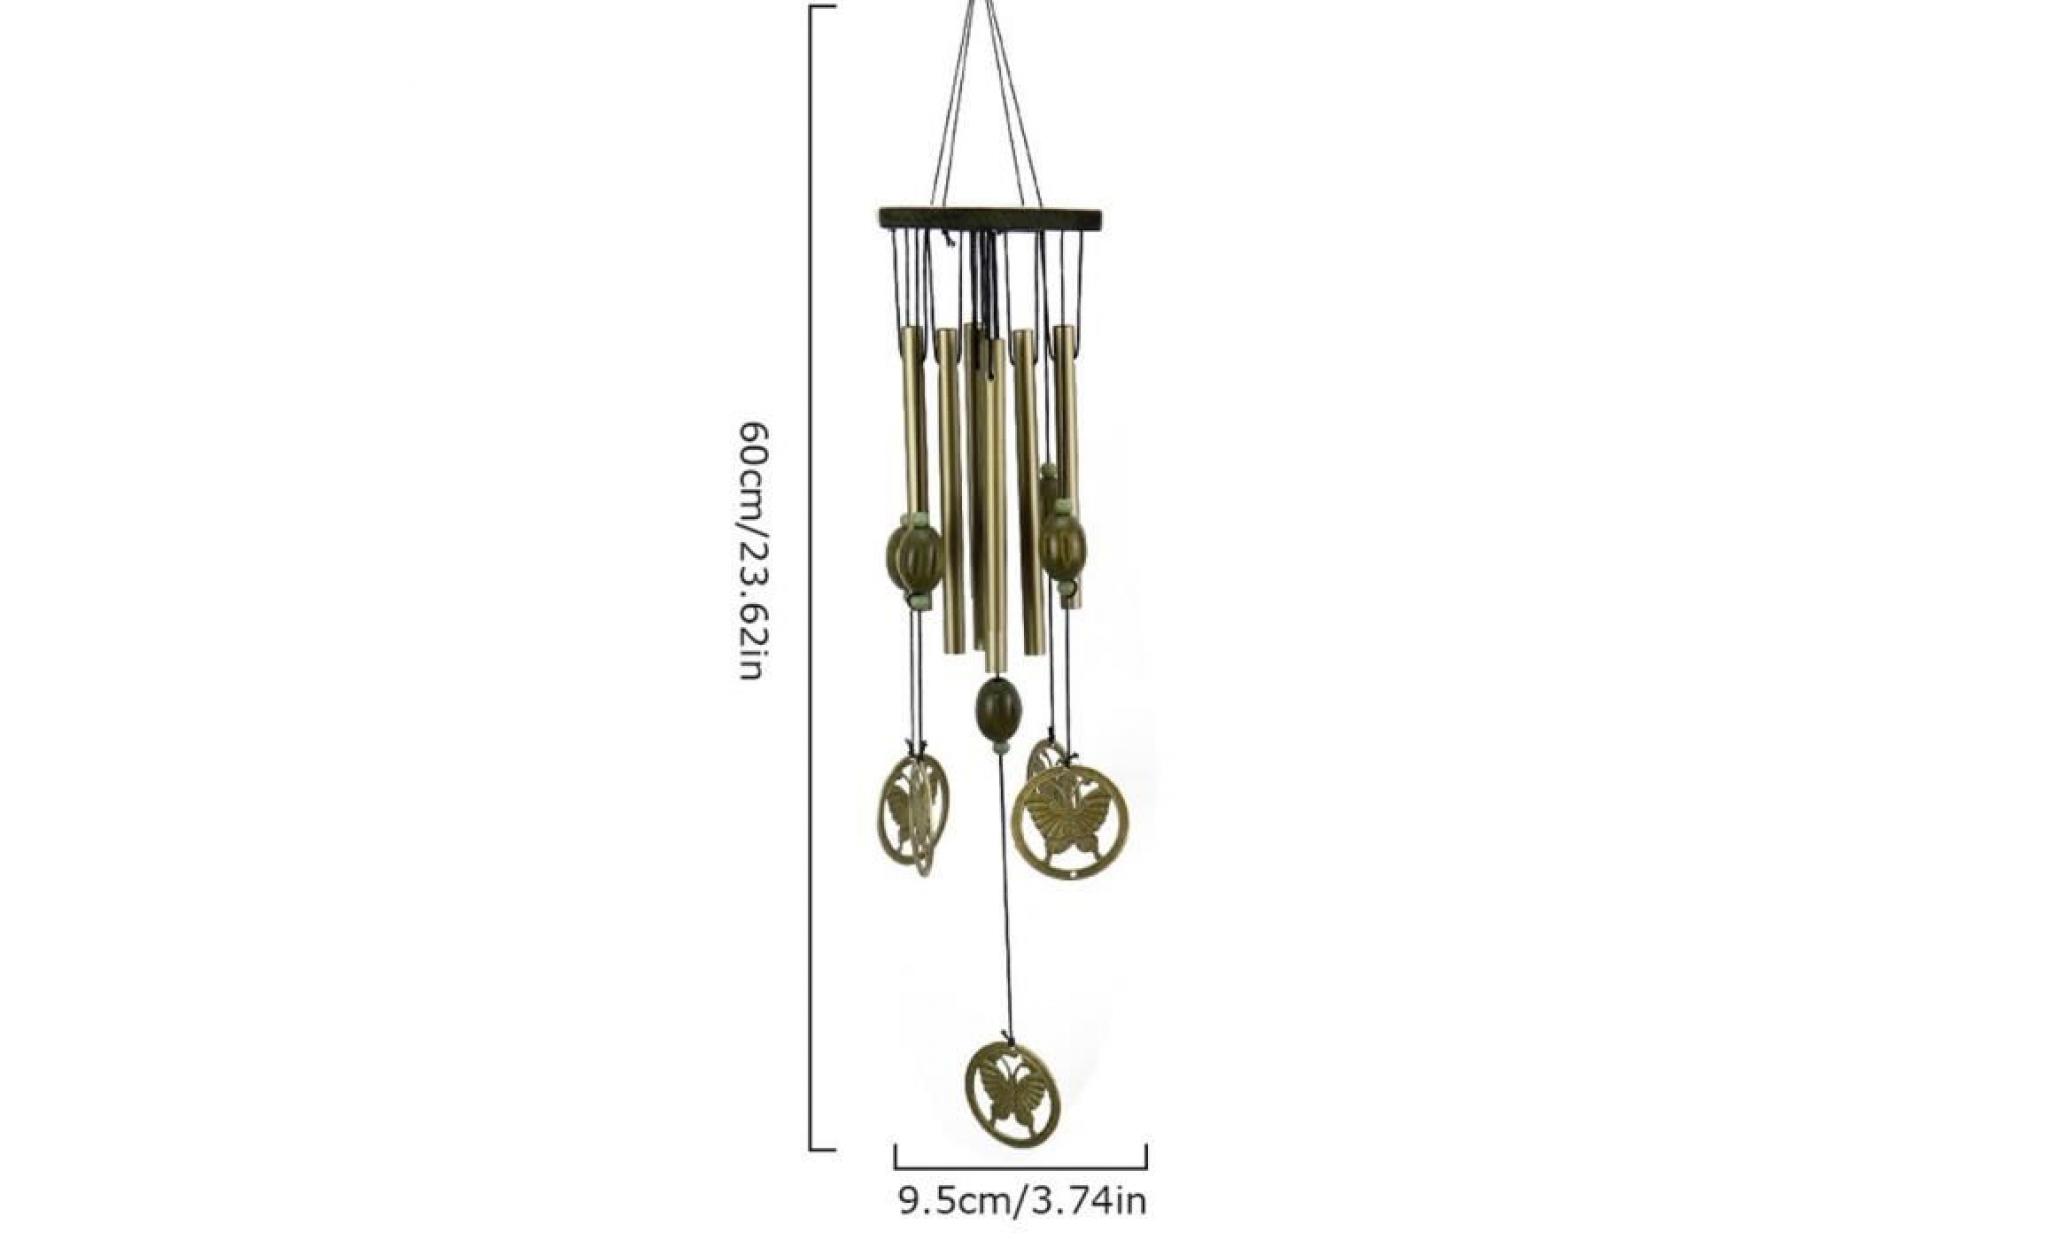 leegoal carillons éoliens crisp multi tubes en bronze (la voile, bois massif + métal) pas cher